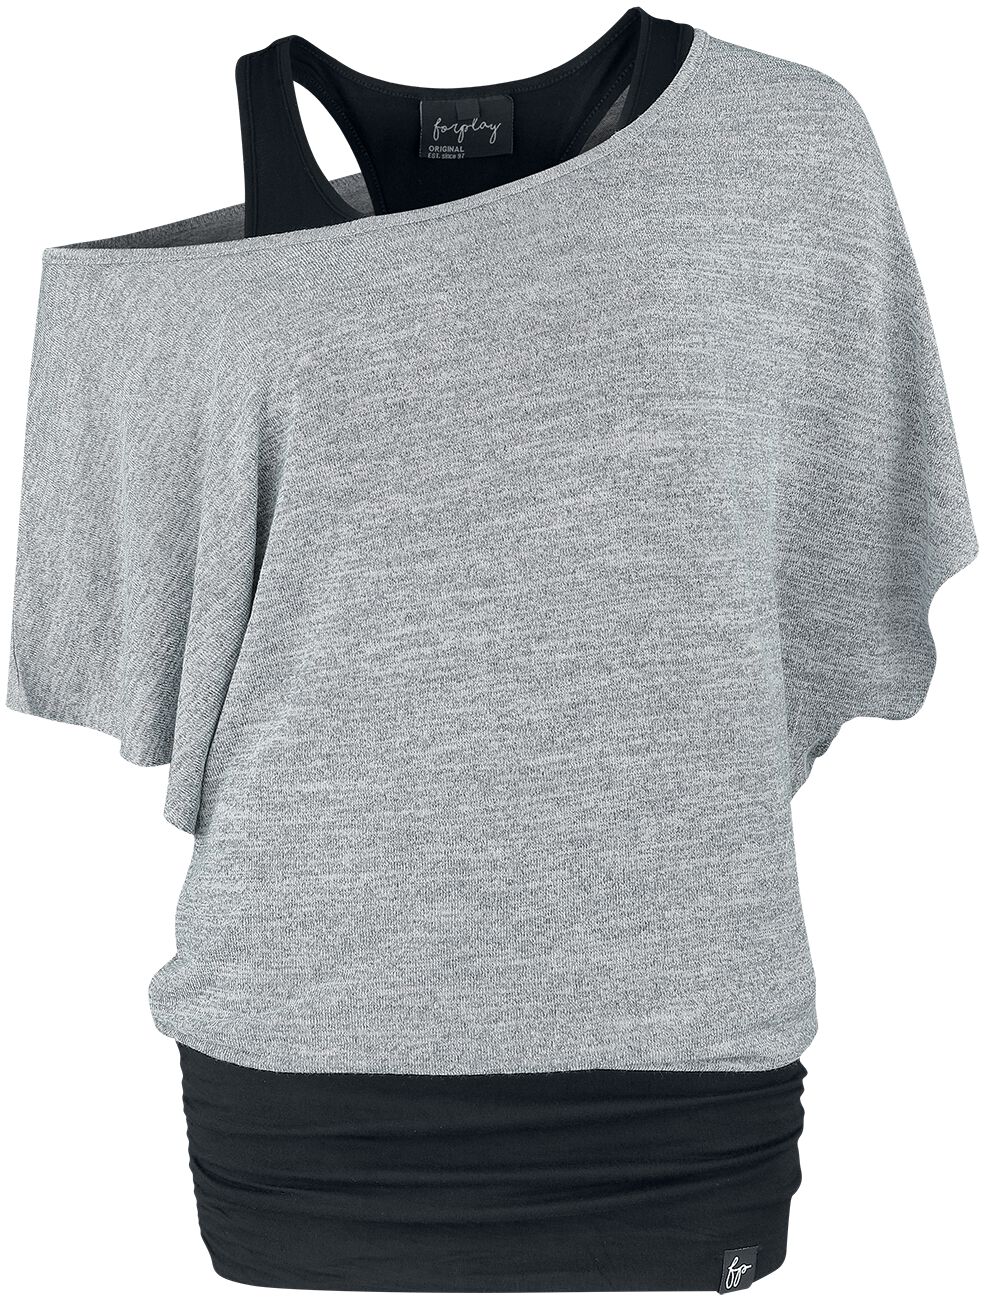 T-Shirt Manches courtes de Forplay - Jean - S à XL - pour Femme - noir/gris